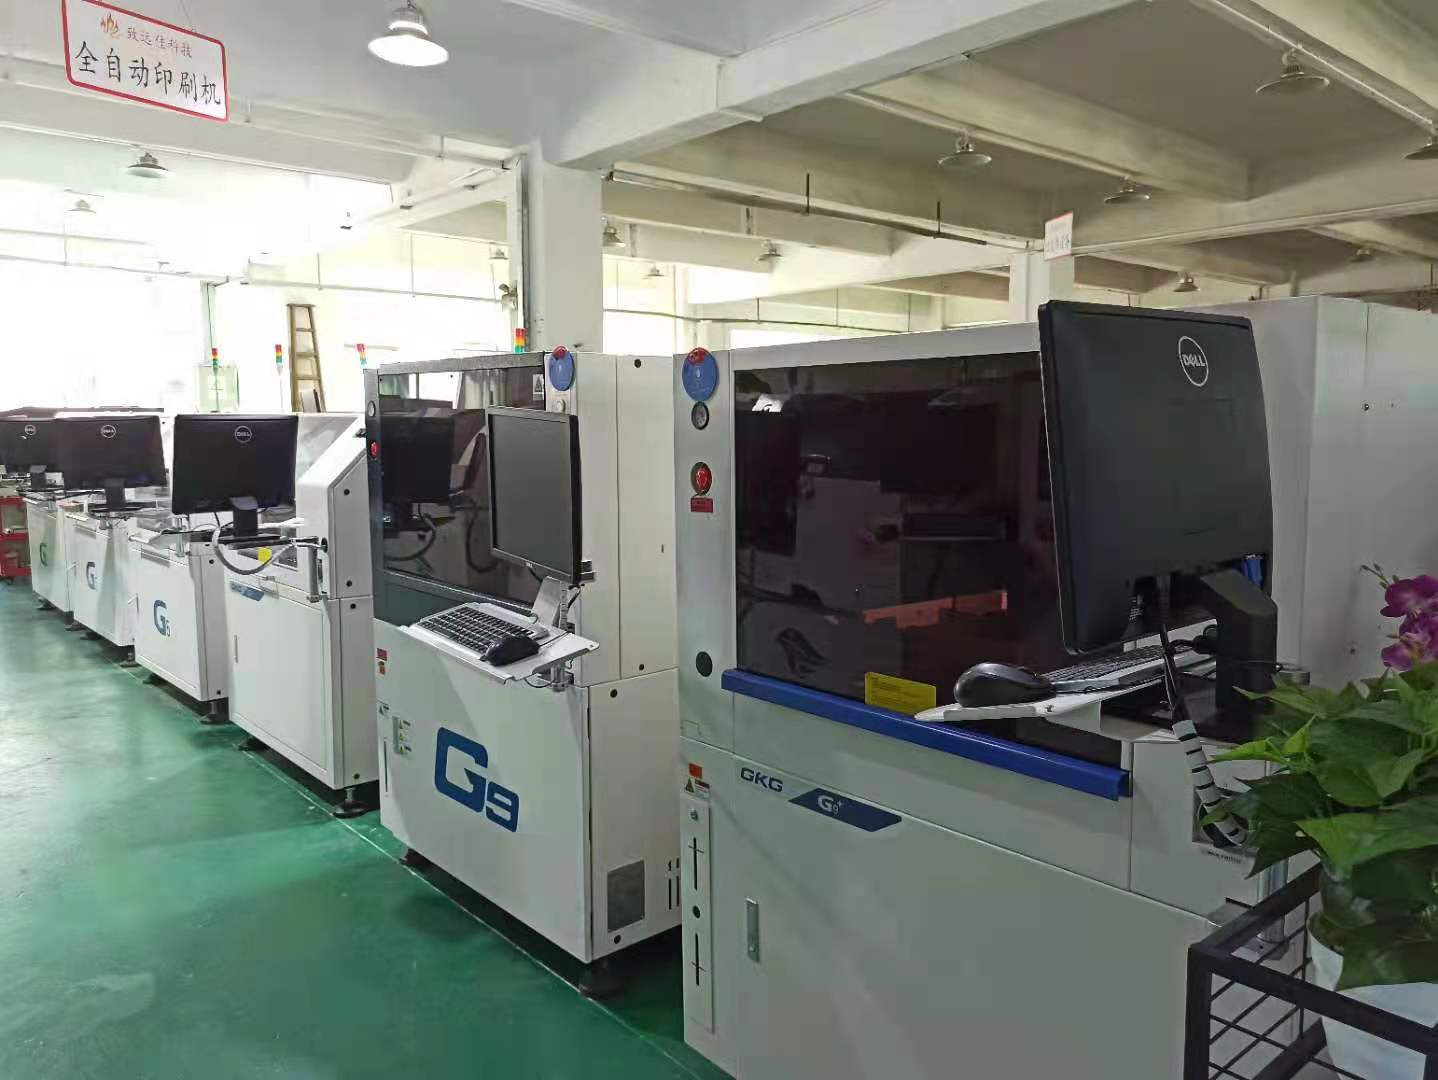 全新二手GKG全自动印刷机 g5 G9 GSE印刷机可租可售